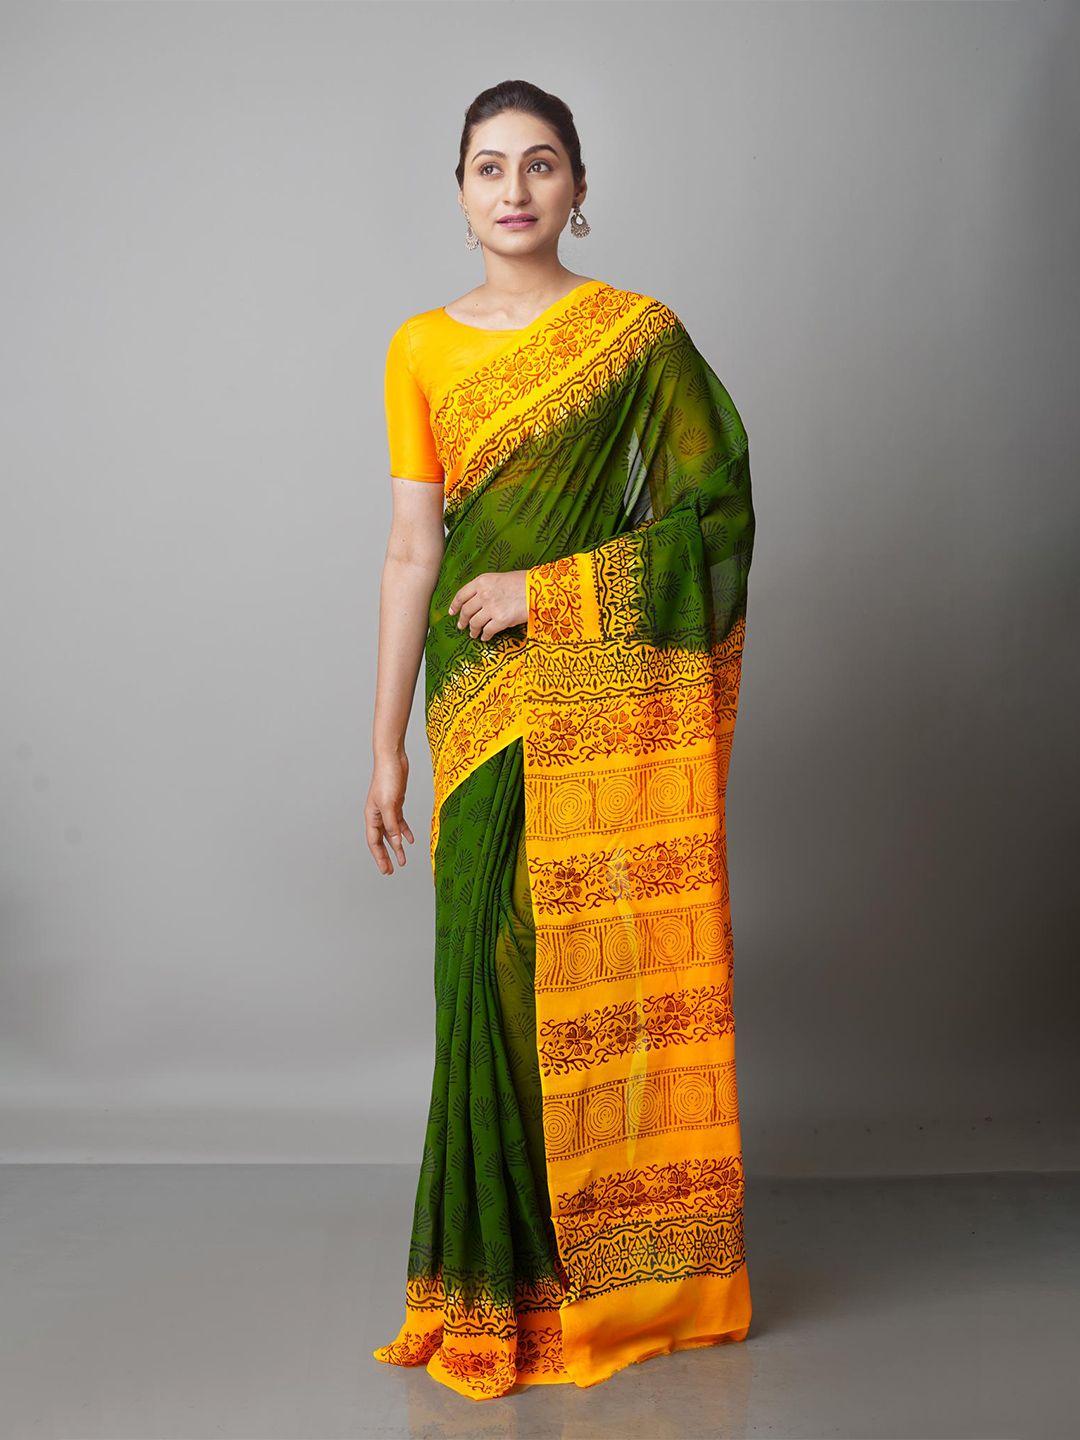 unnati silks olive green & yellow floral block print saree